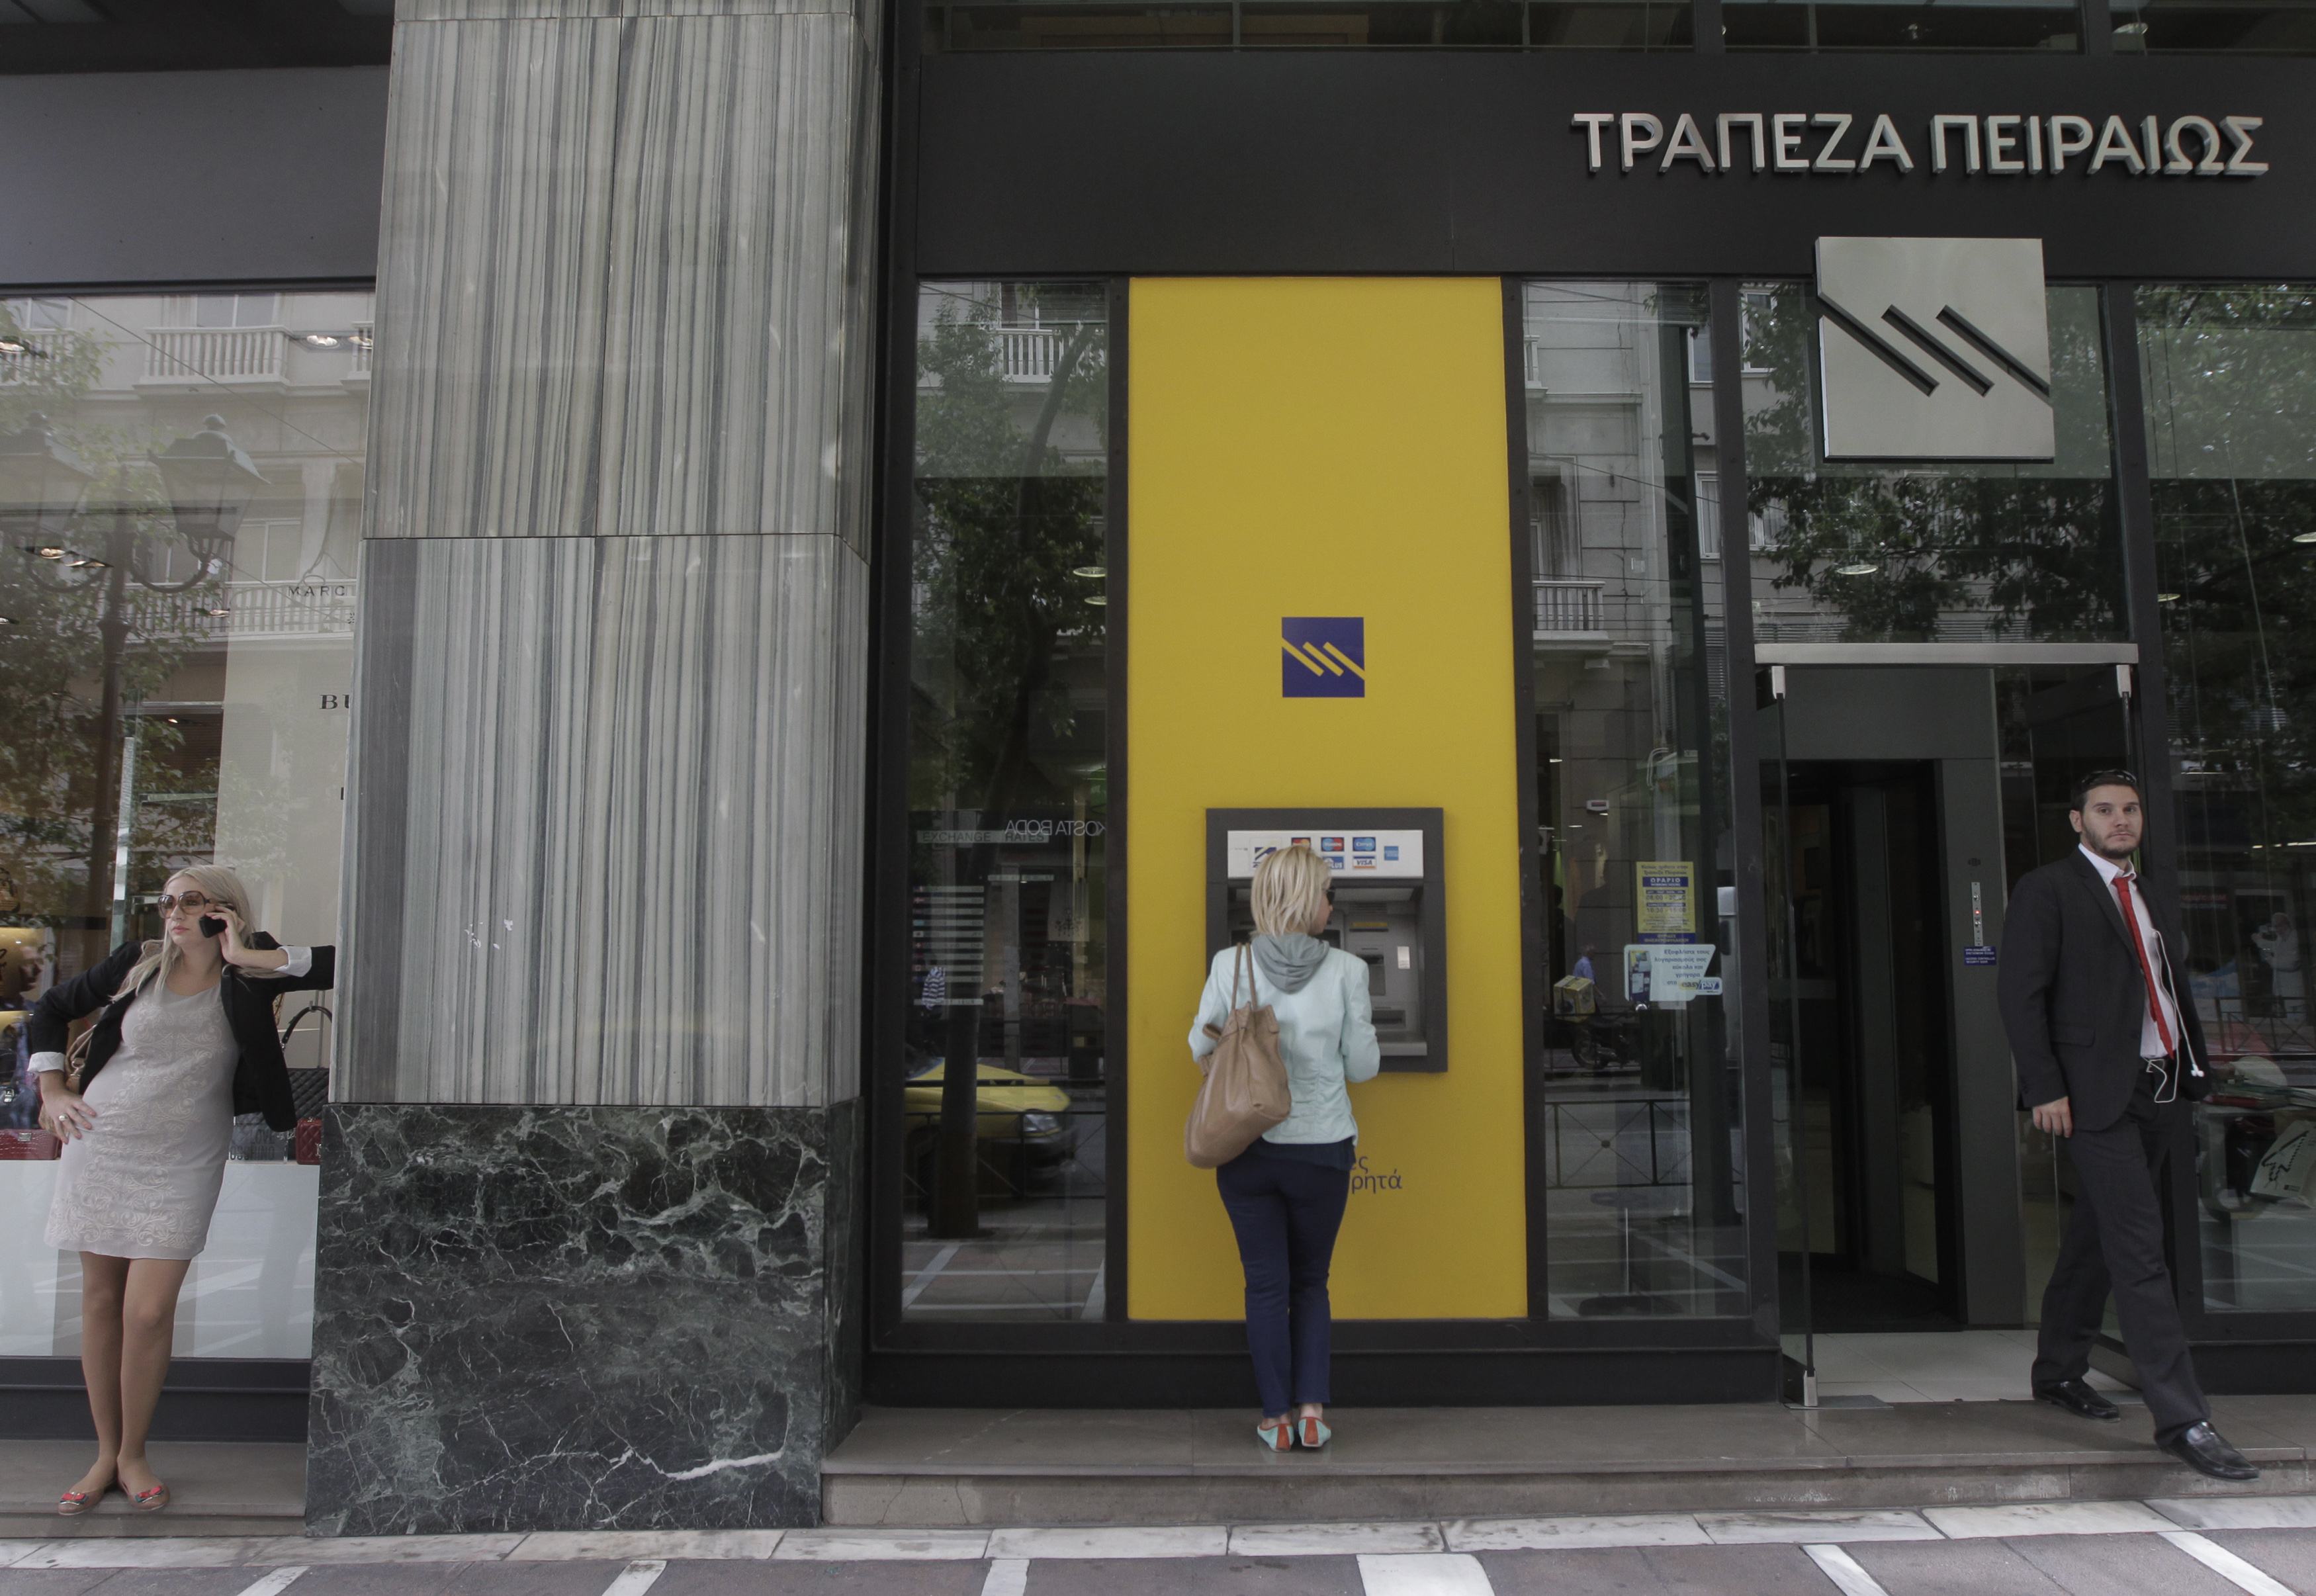 Ανθ. Θωμόπουλος: Η Τράπεζα Πειραιώς δε θα χρειαστεί νέα κεφάλαια